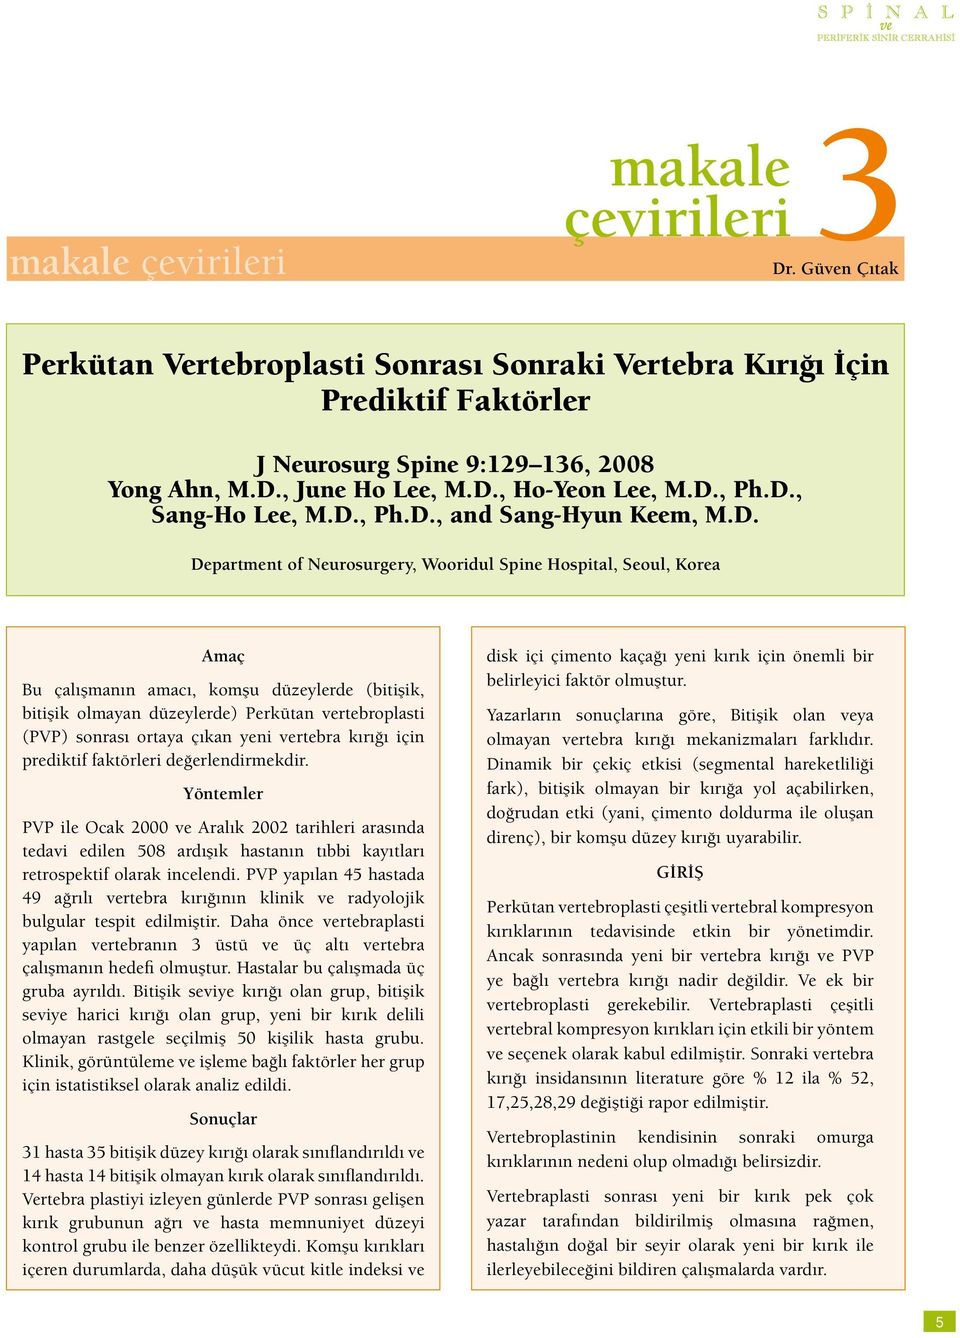 bitişik olmayan düzeylerde) Perkütan vertebroplasti (PVP) sonrası ortaya çıkan yeni vertebra kırığı için prediktif faktörleri değerlendirmekdir.